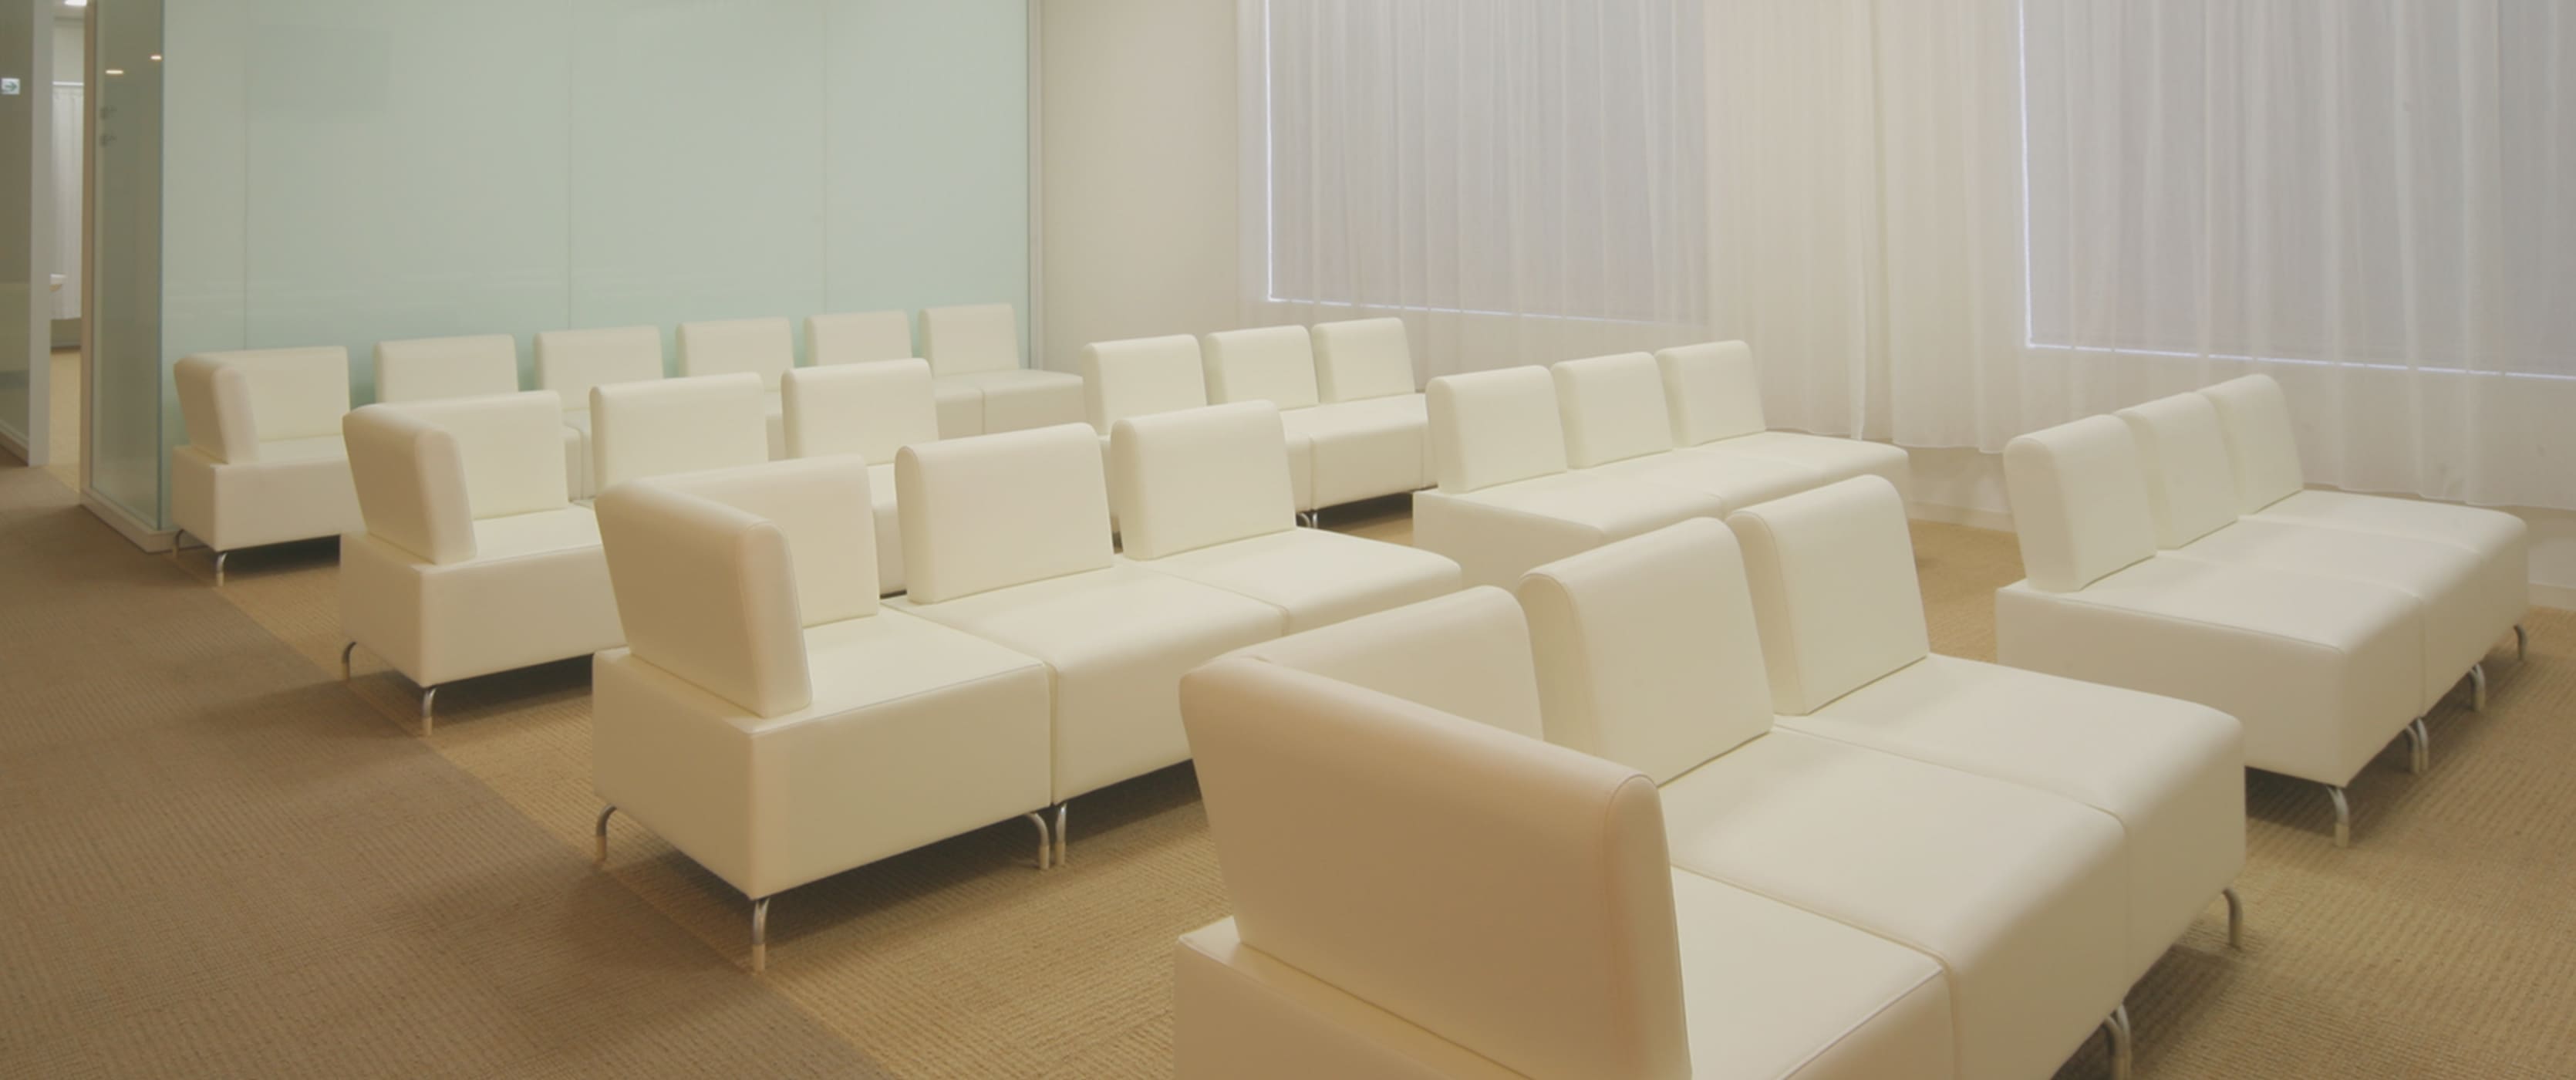 白いソファーが並ぶ浜田病院健診センターの待合室